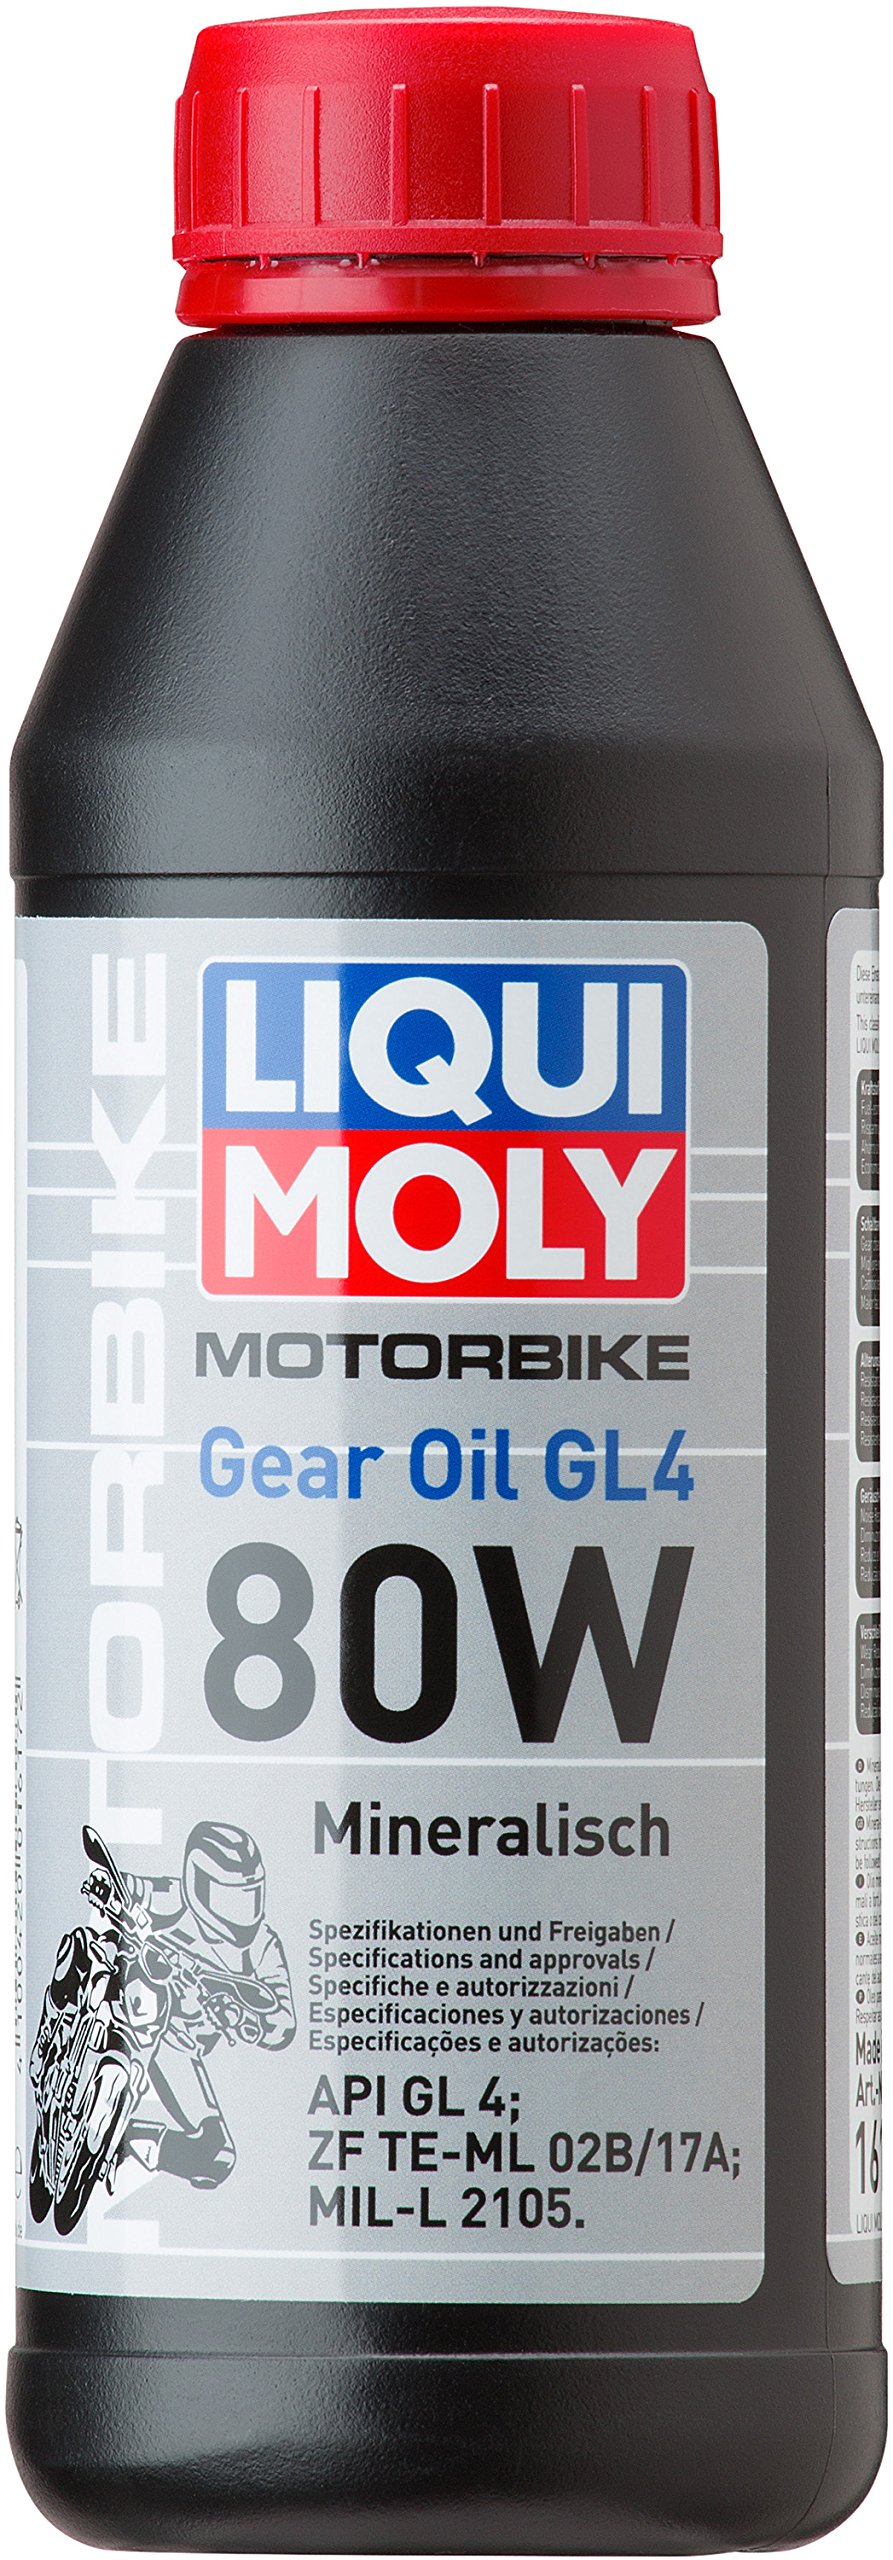 LIQUI MOLY Motorbike Gear Oil (GL4) 80W | 500 ml | Motorrad Getriebeöl | Art.-Nr.: 1617 von Liqui Moly